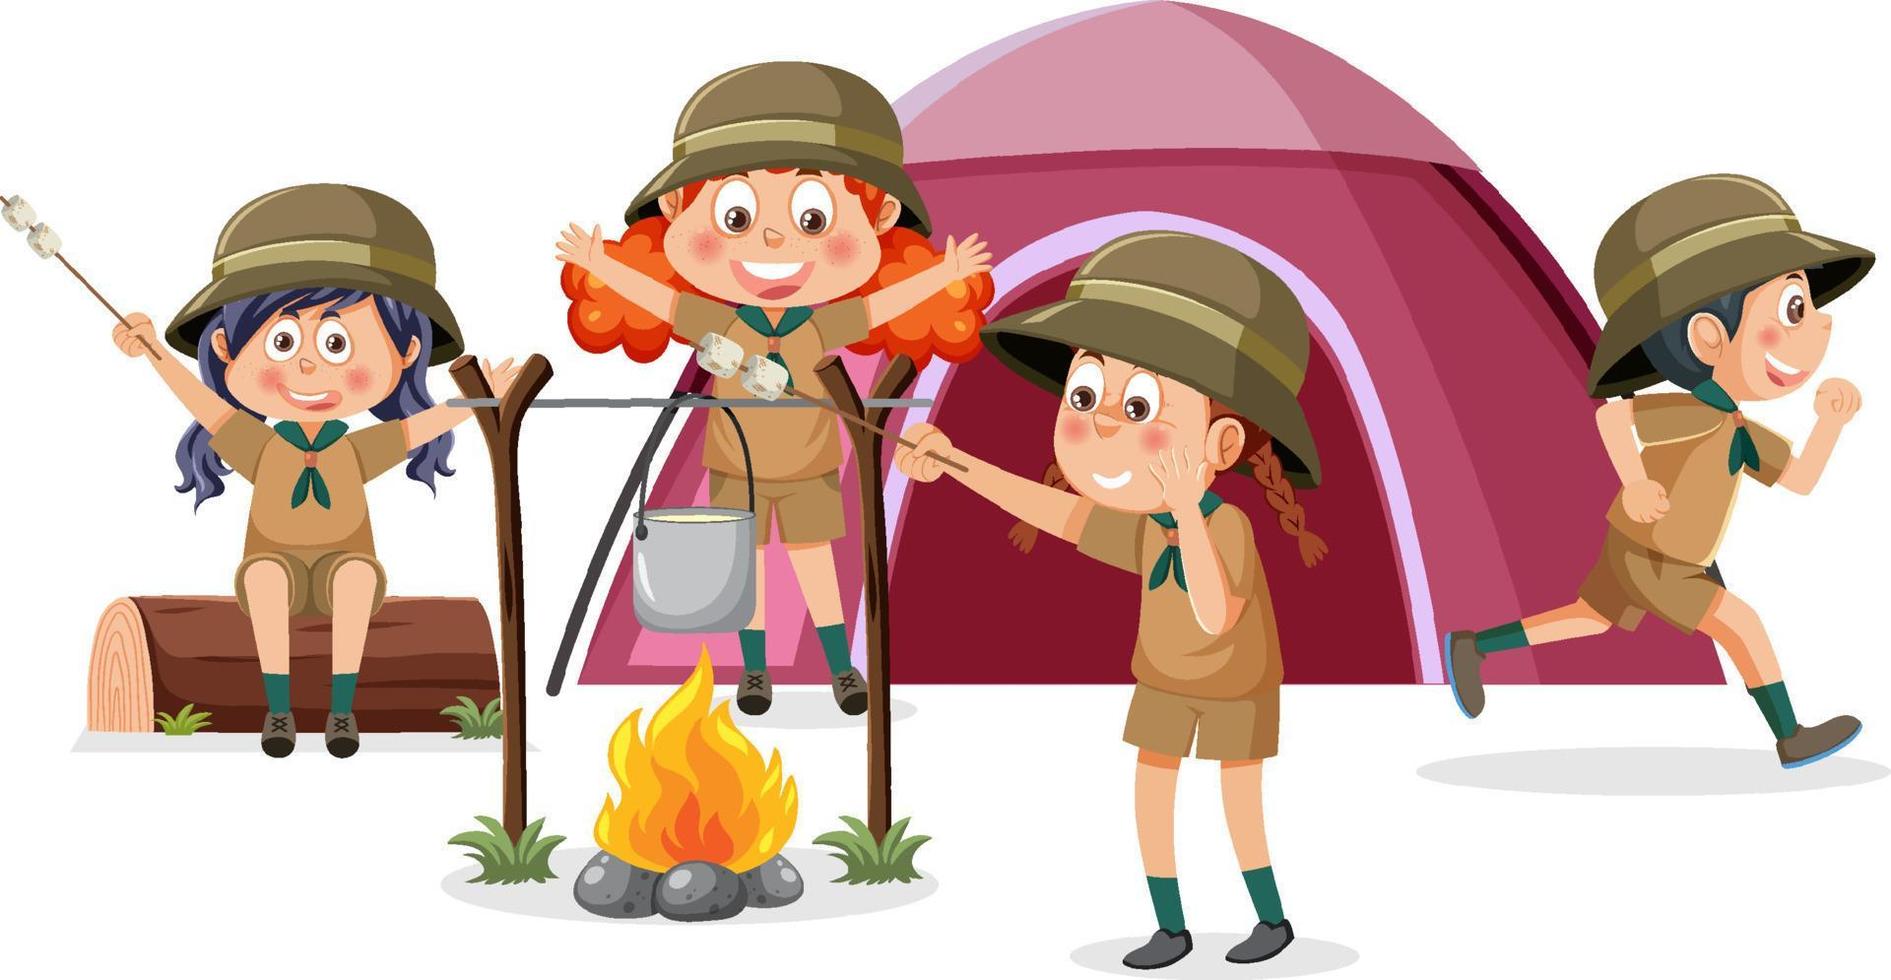 Happy children camping outdoor vector